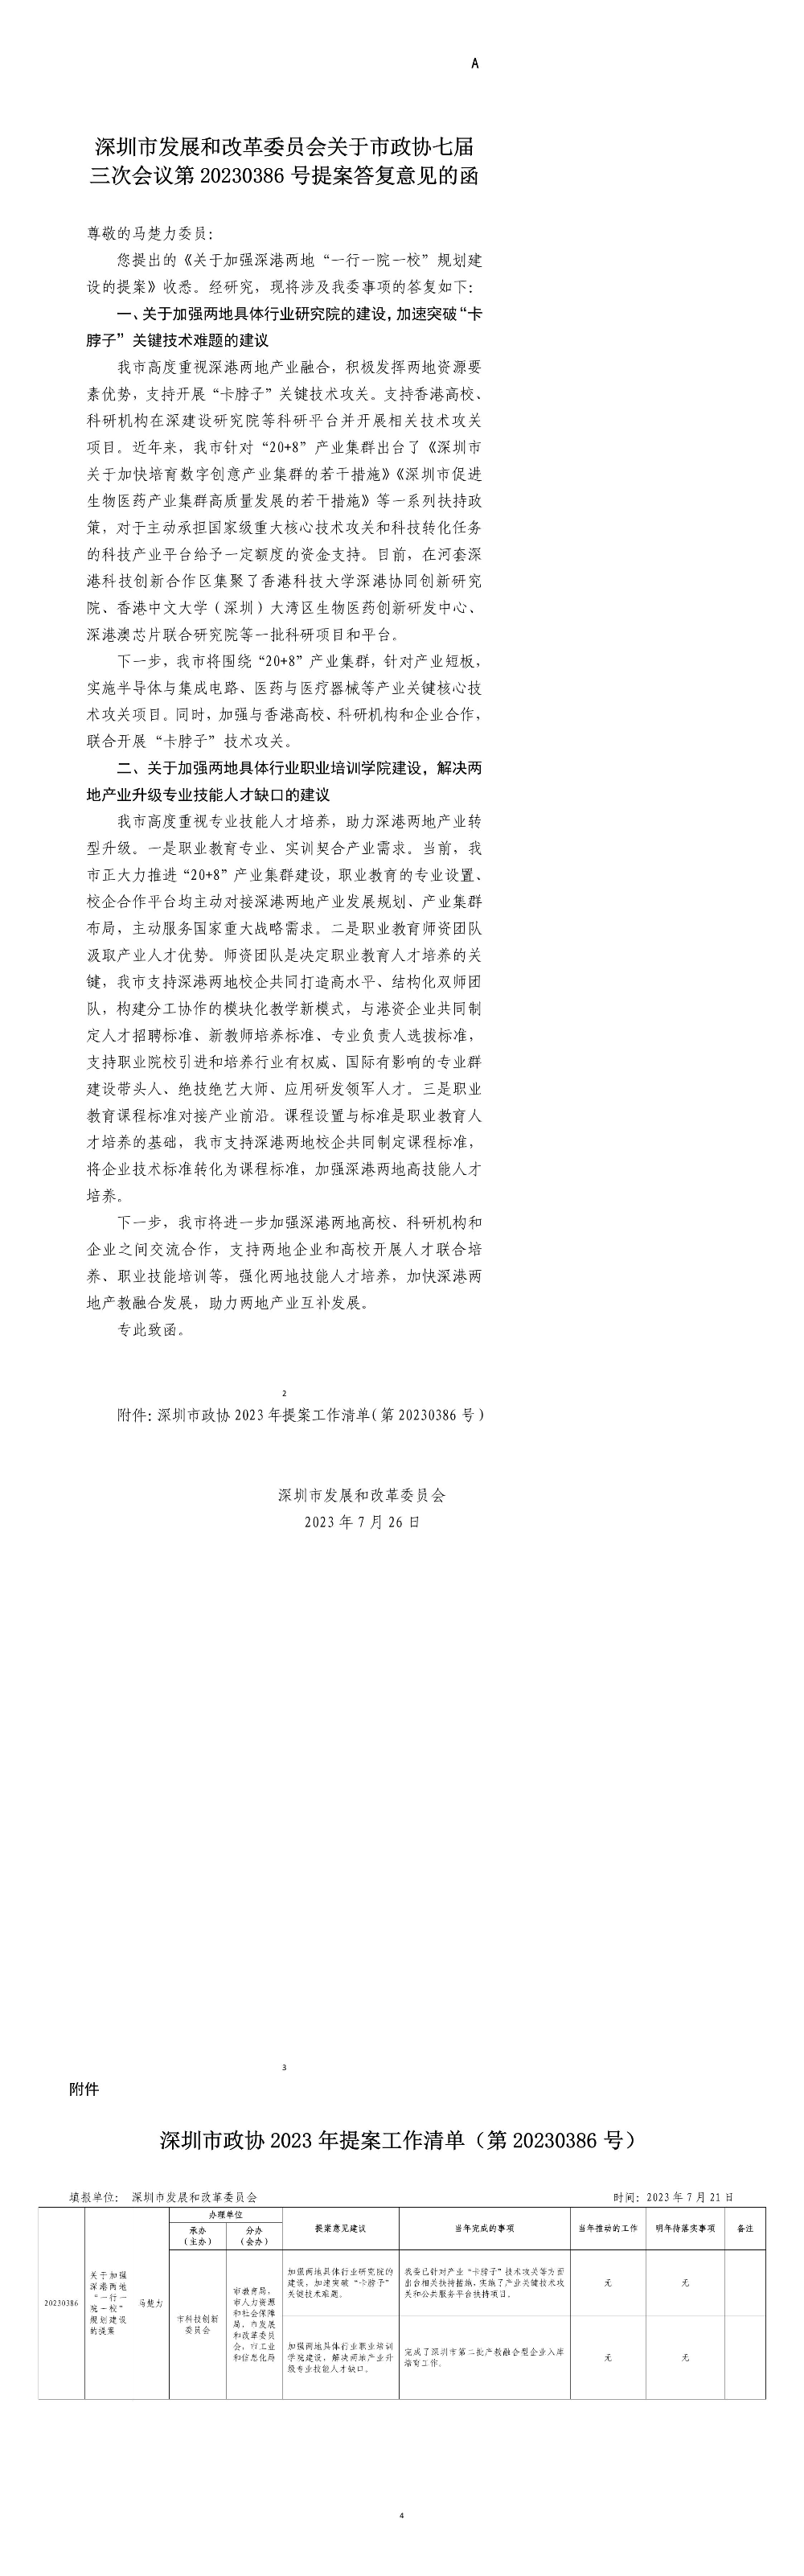 深圳市发展和改革委员会关于市政协七届三次会议第20230386号提案答复意见的函.jpg